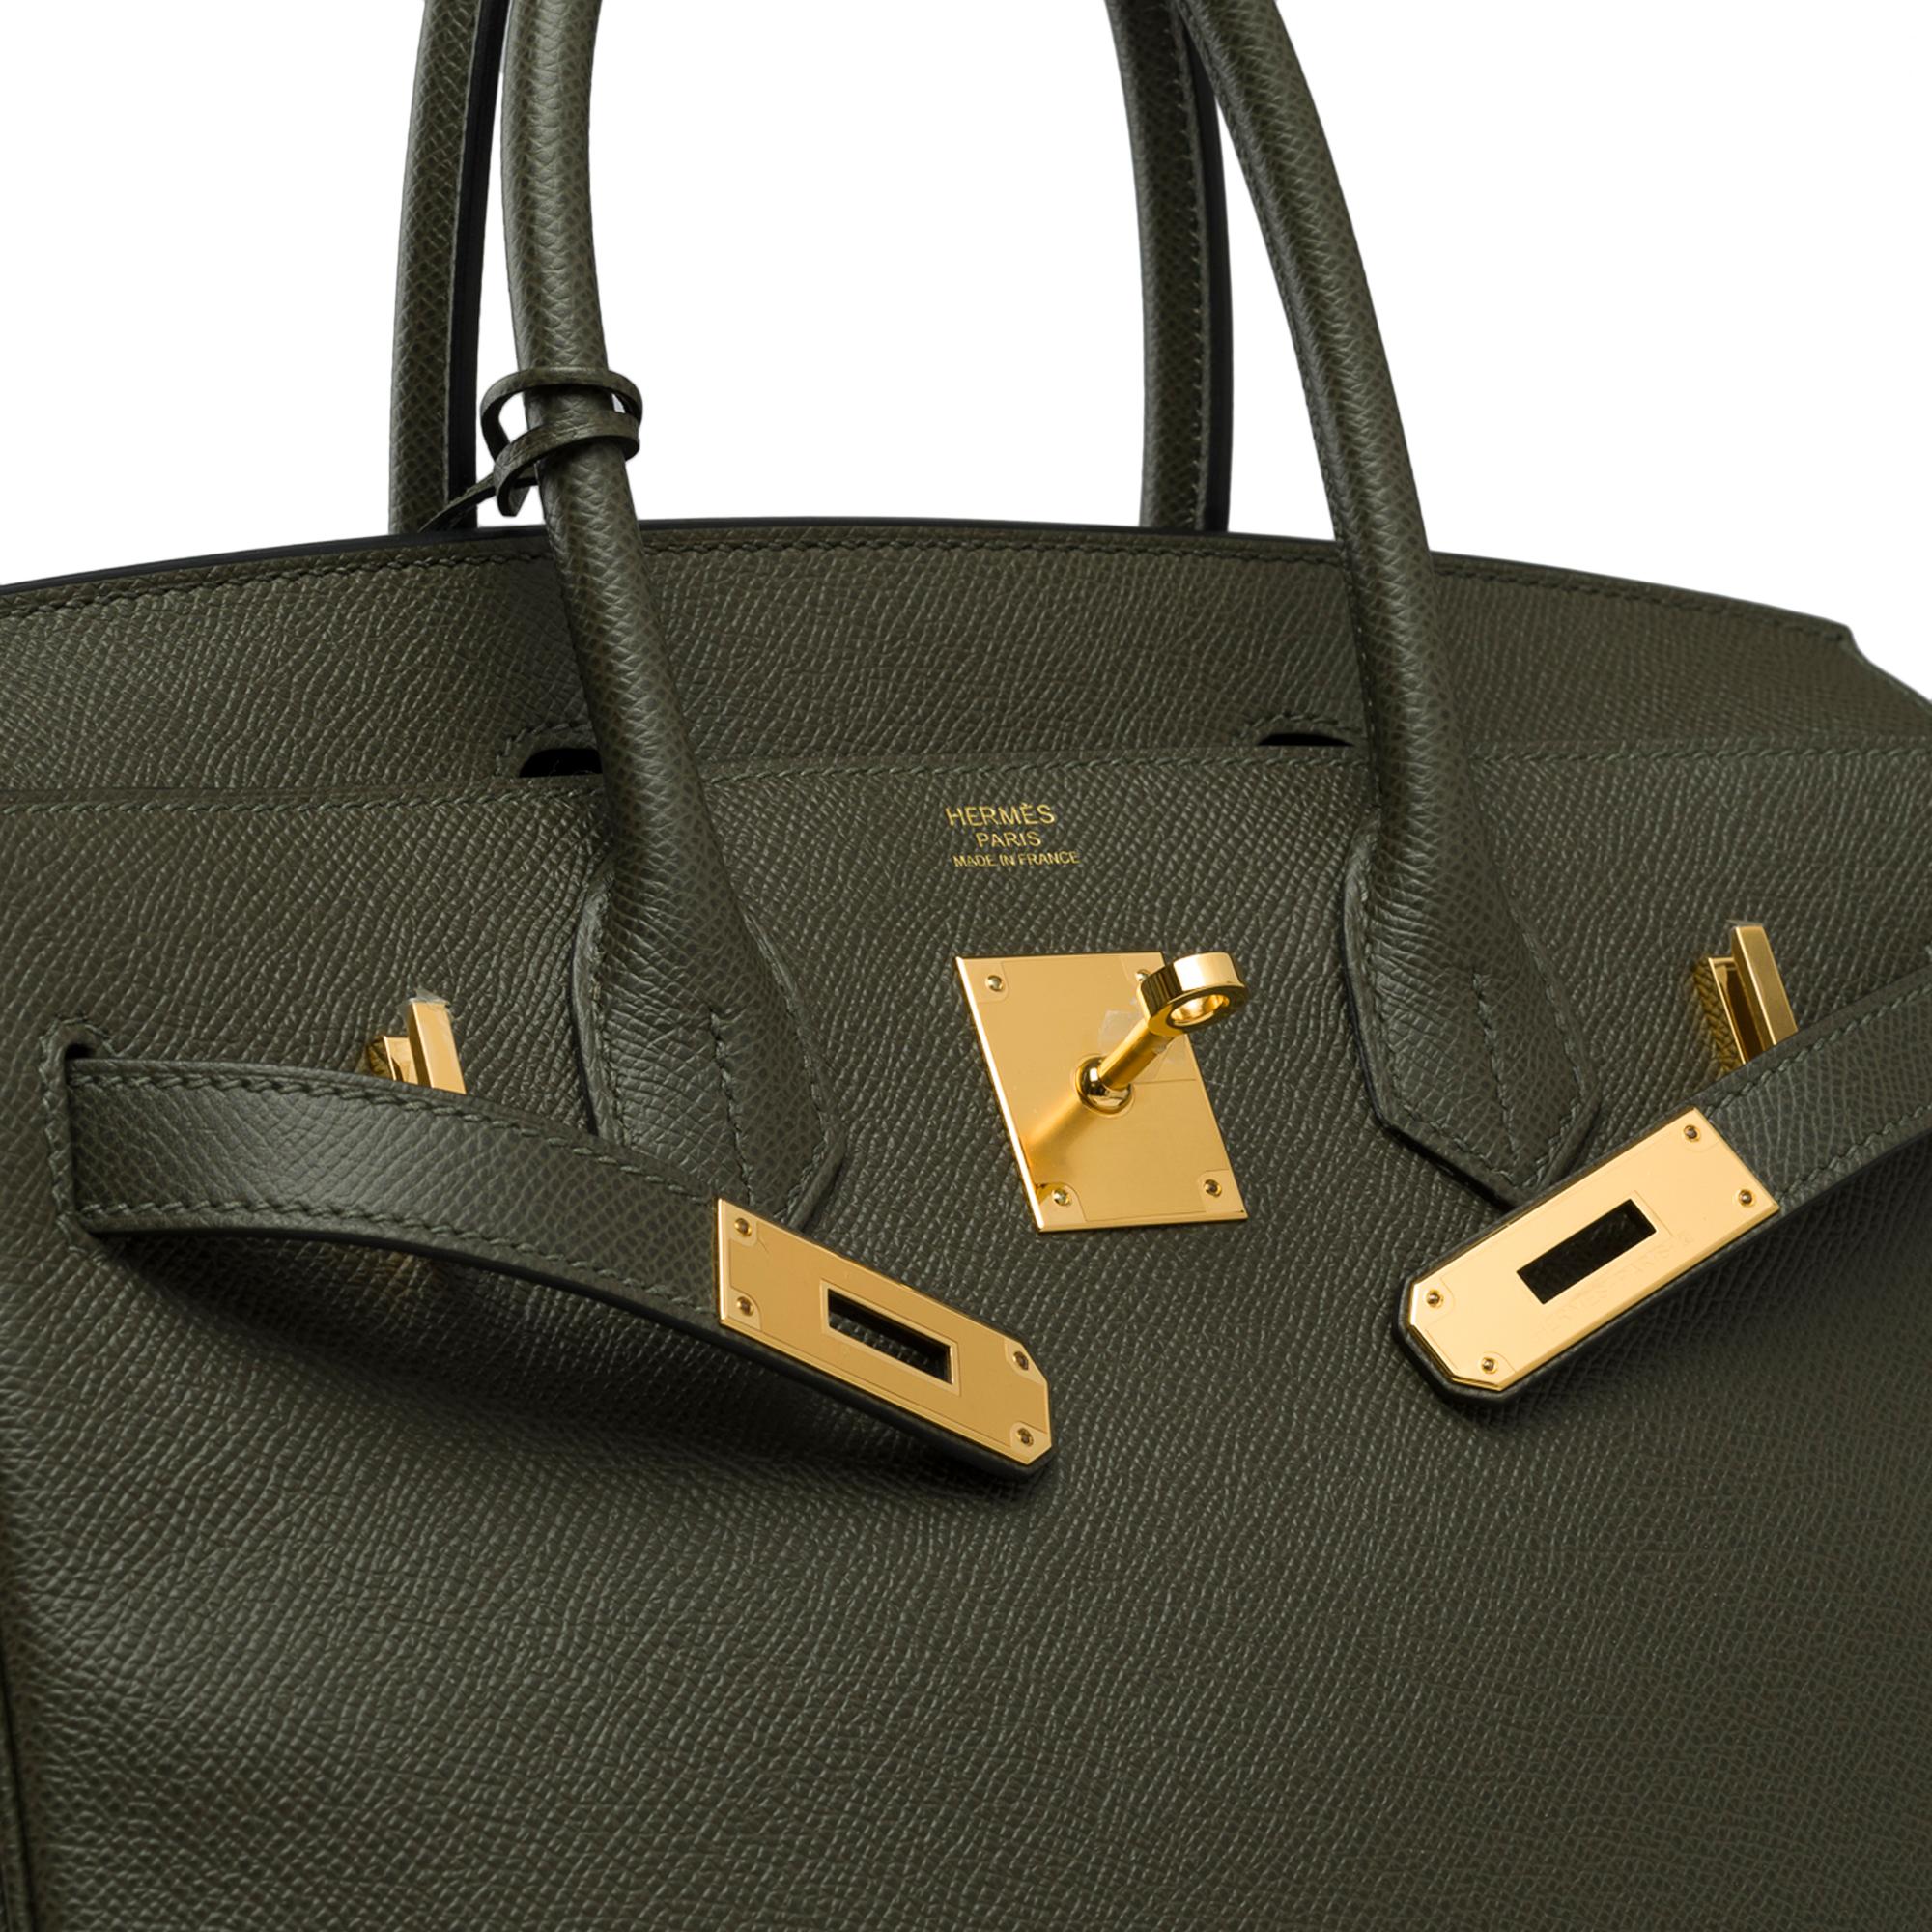 Splendid Hermes Birkin 30 handbag in Vert de Gris Epsom leather, SHW For Sale 1